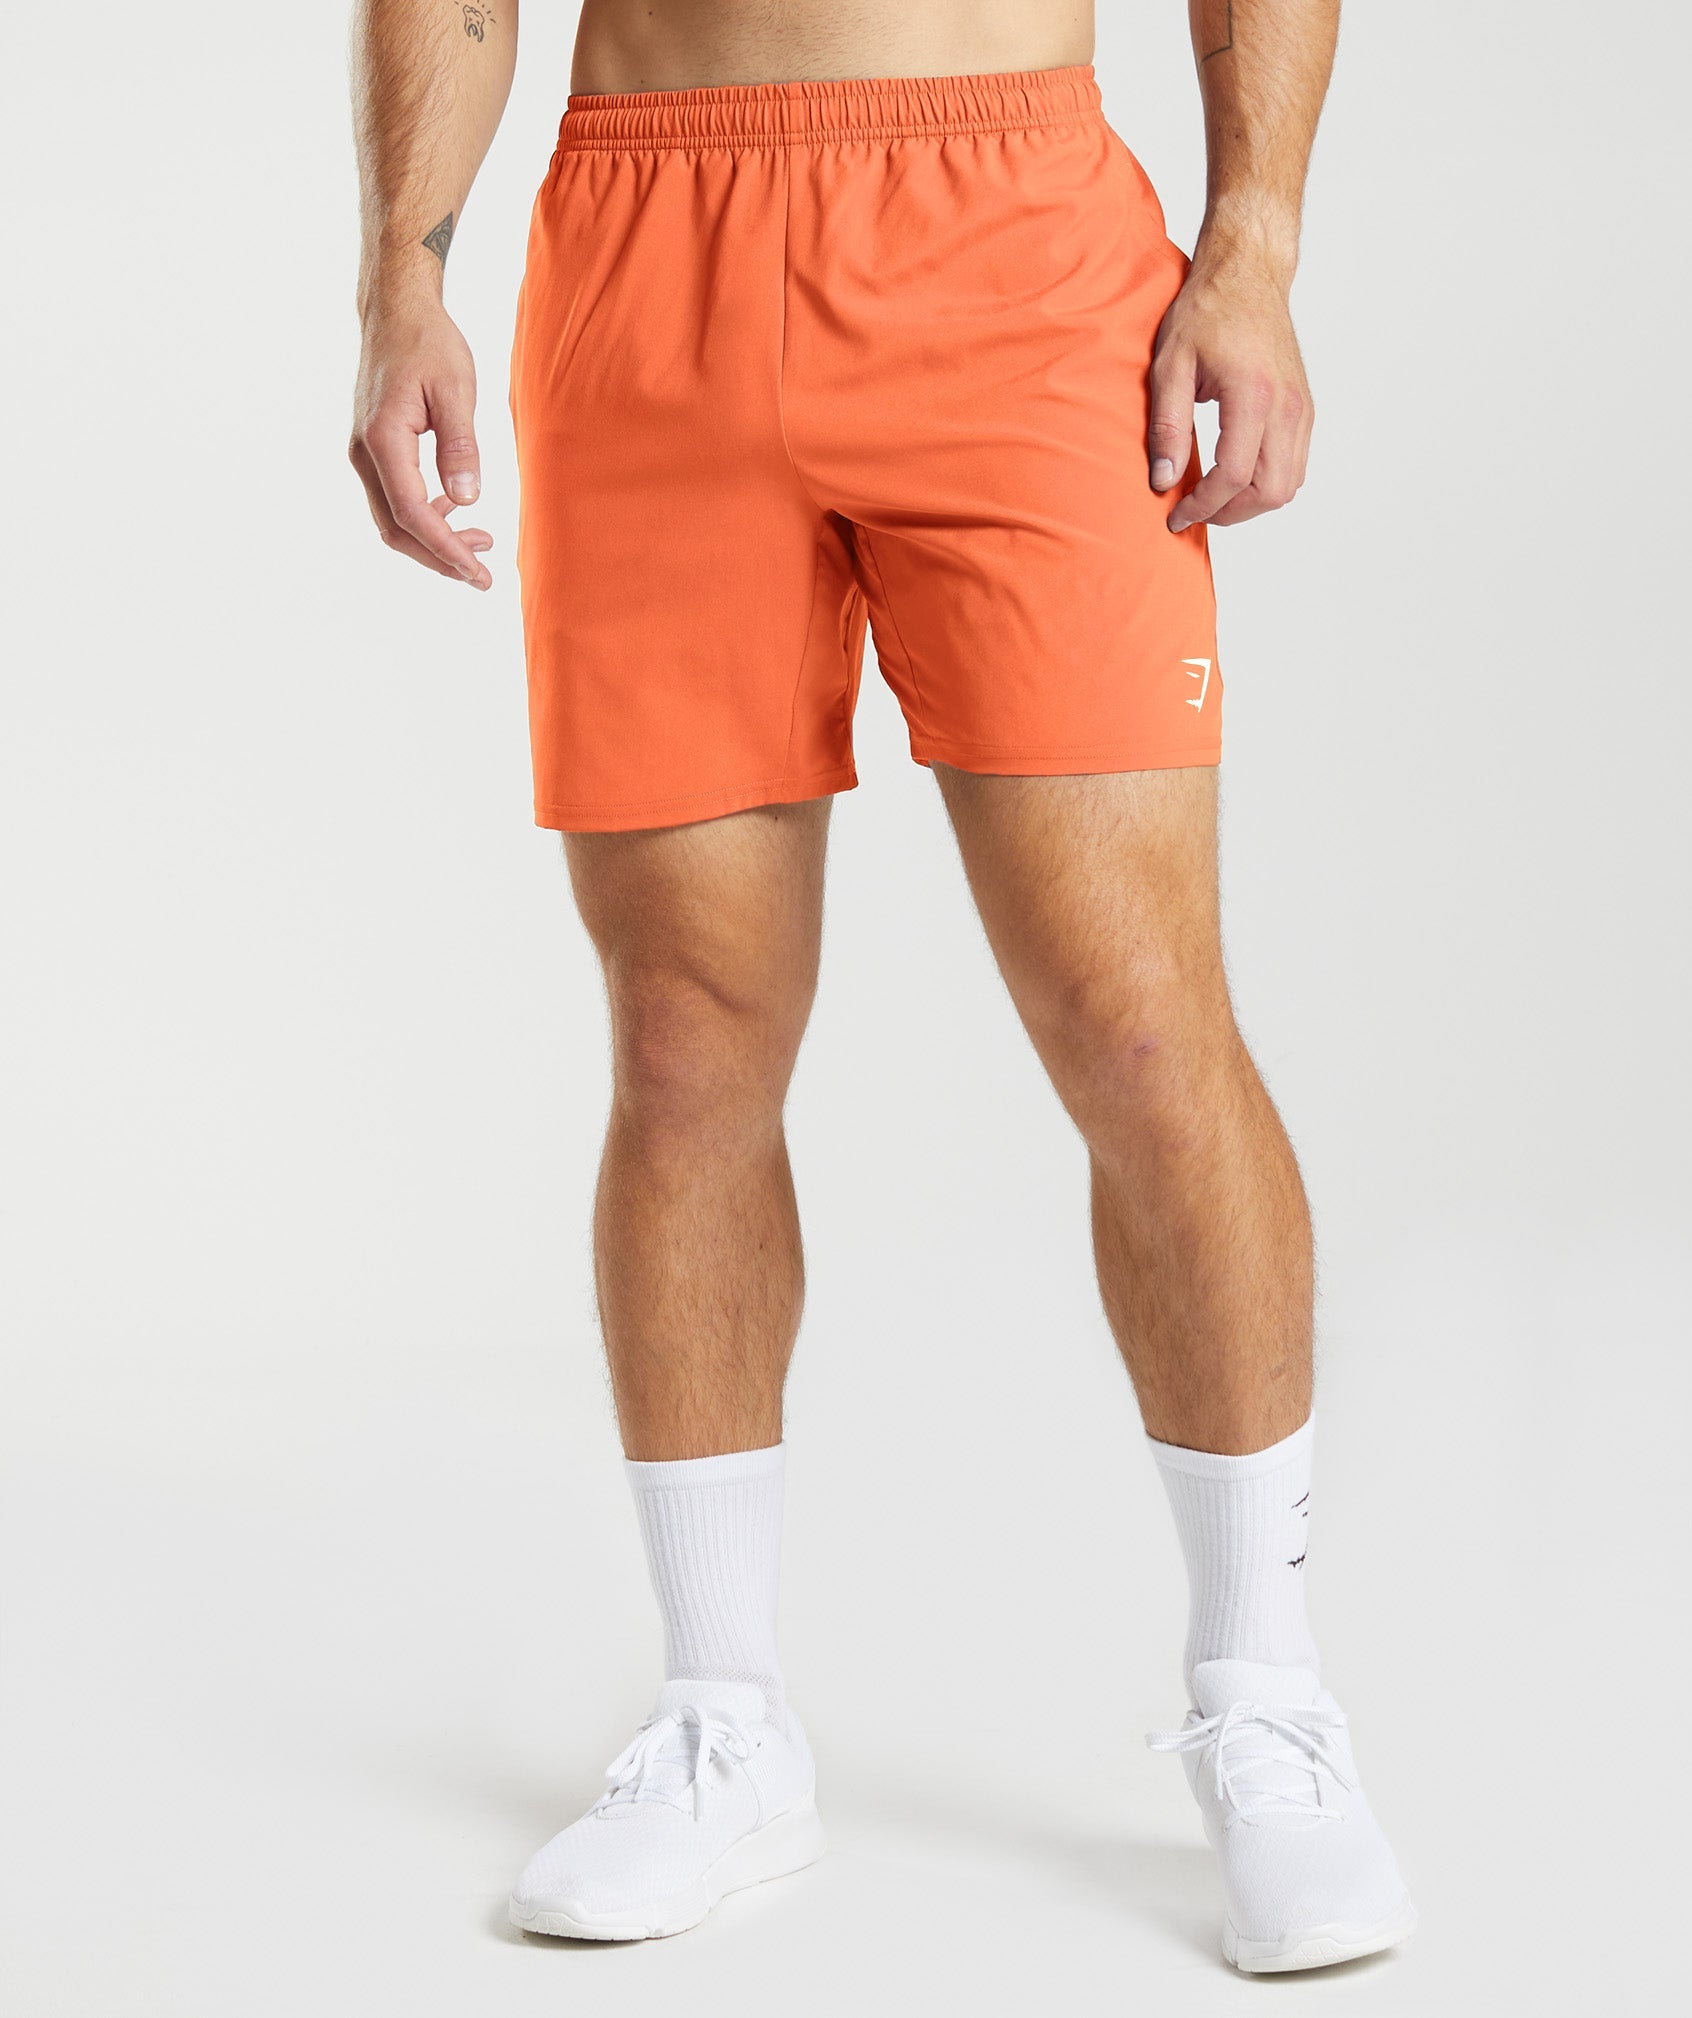 Gymshark Arrival 5 Shorts - Aerospace Orange